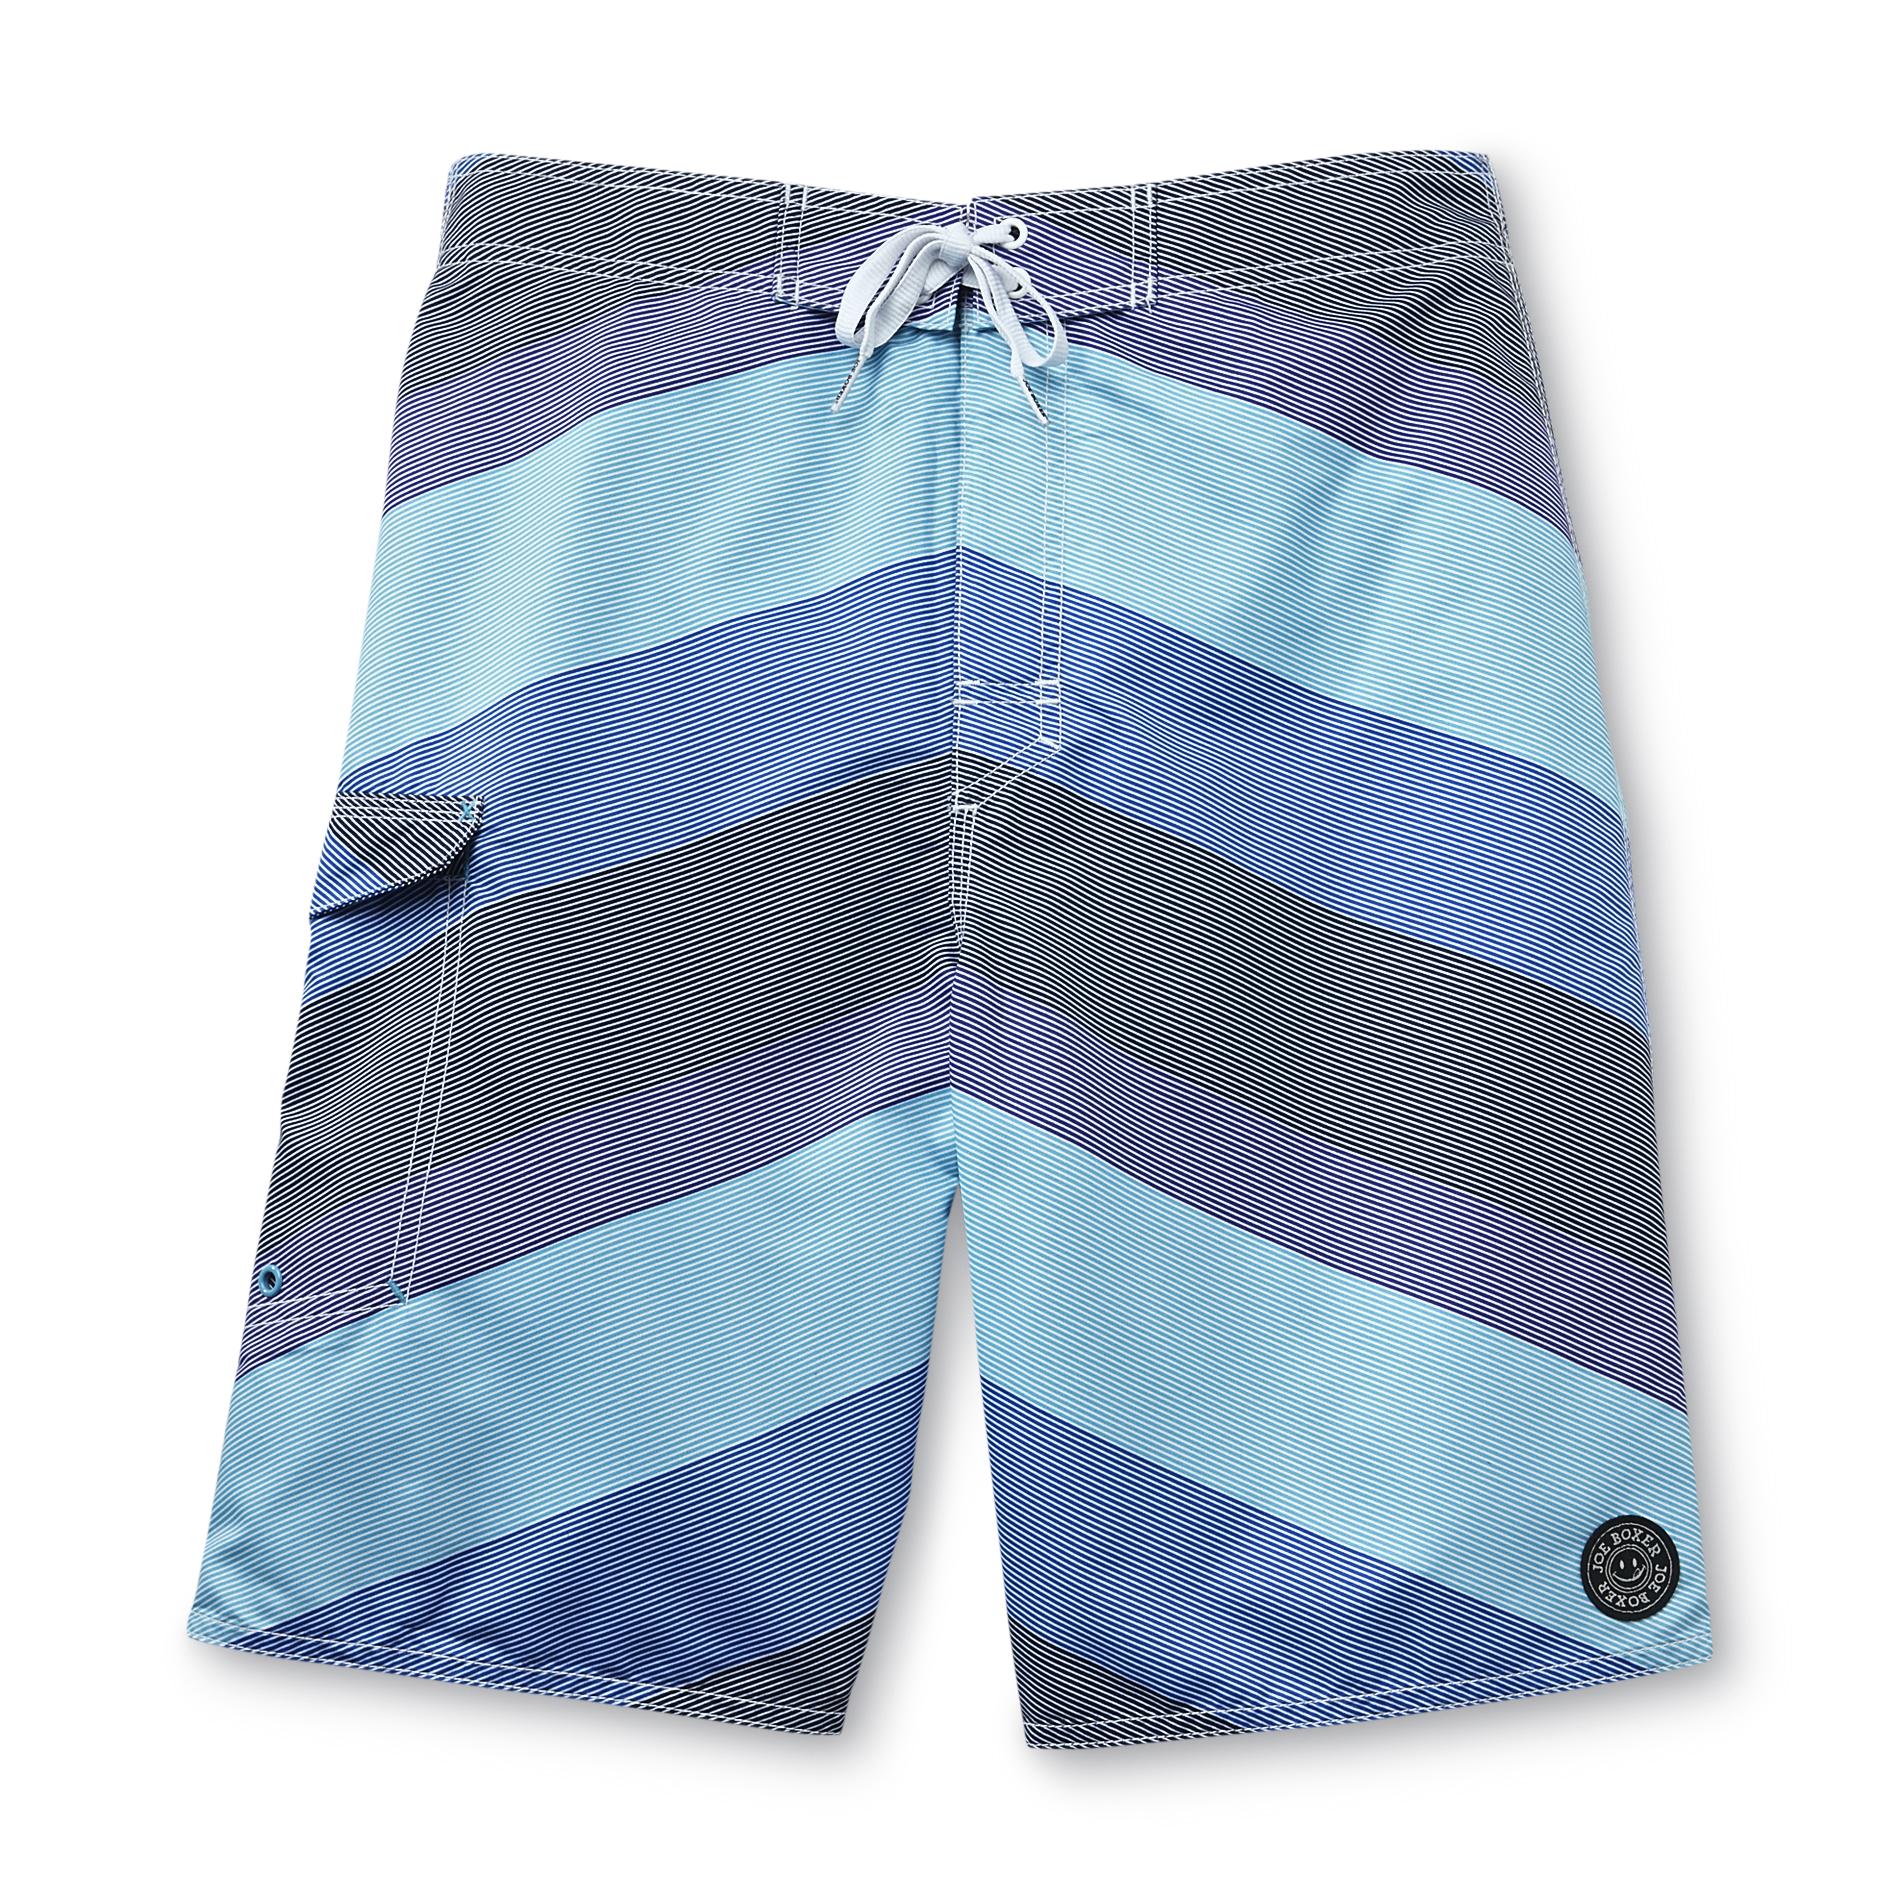 Joe Boxer Men's Cargo Board Shorts - V-Stripes